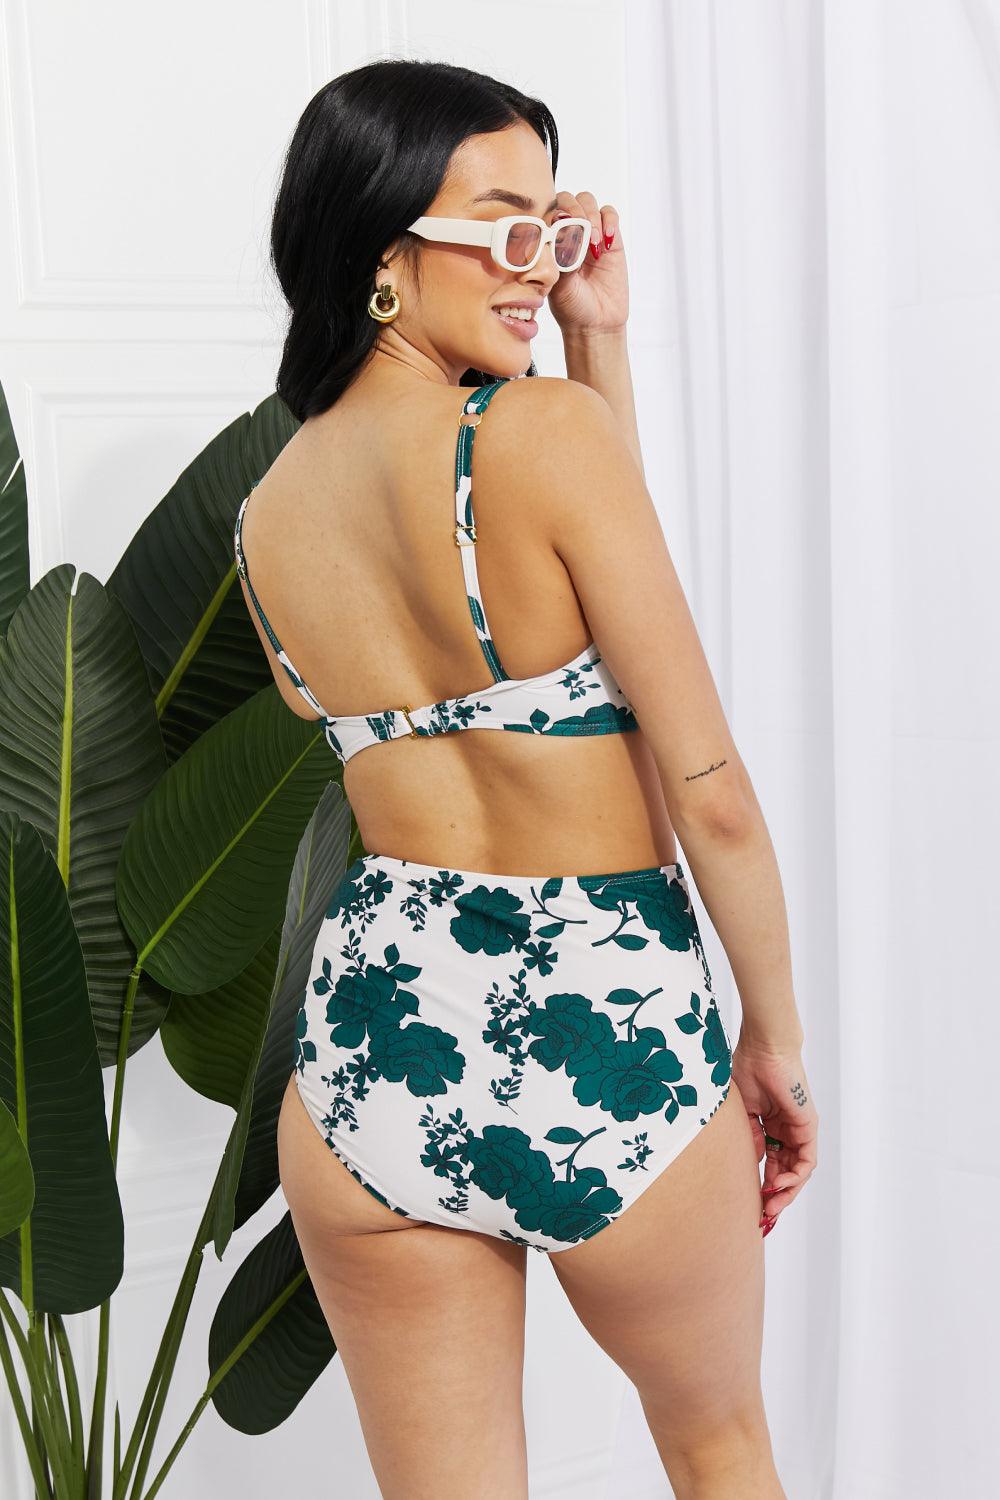 Marina West Swim Take A Dip Twist High-Rise Bikini in Forest - Glamorous Boutique USA L.L.C.